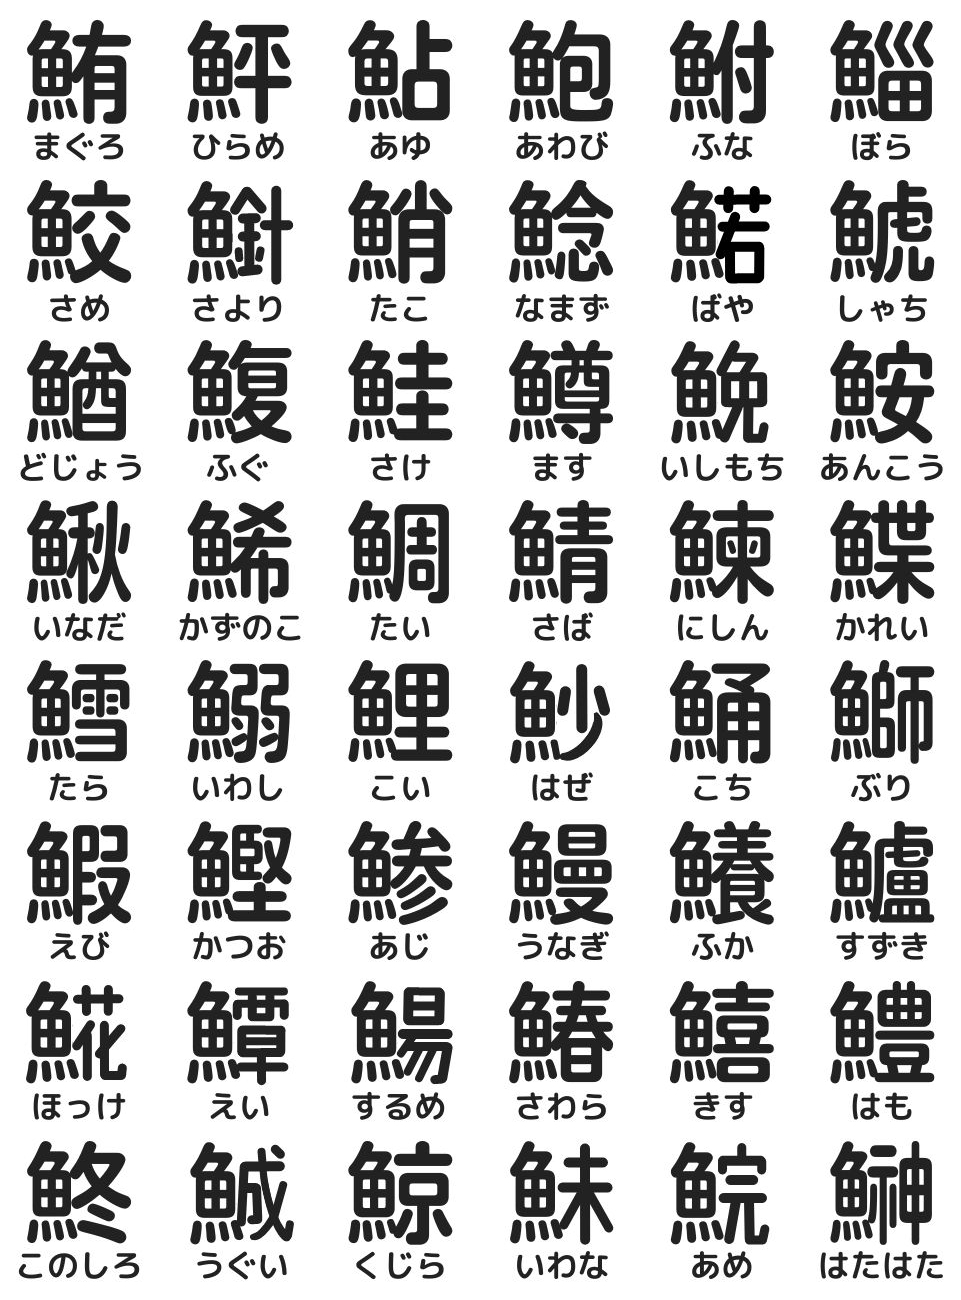 寿司屋の湯呑みに書かれた魚へんの難読漢字一覧